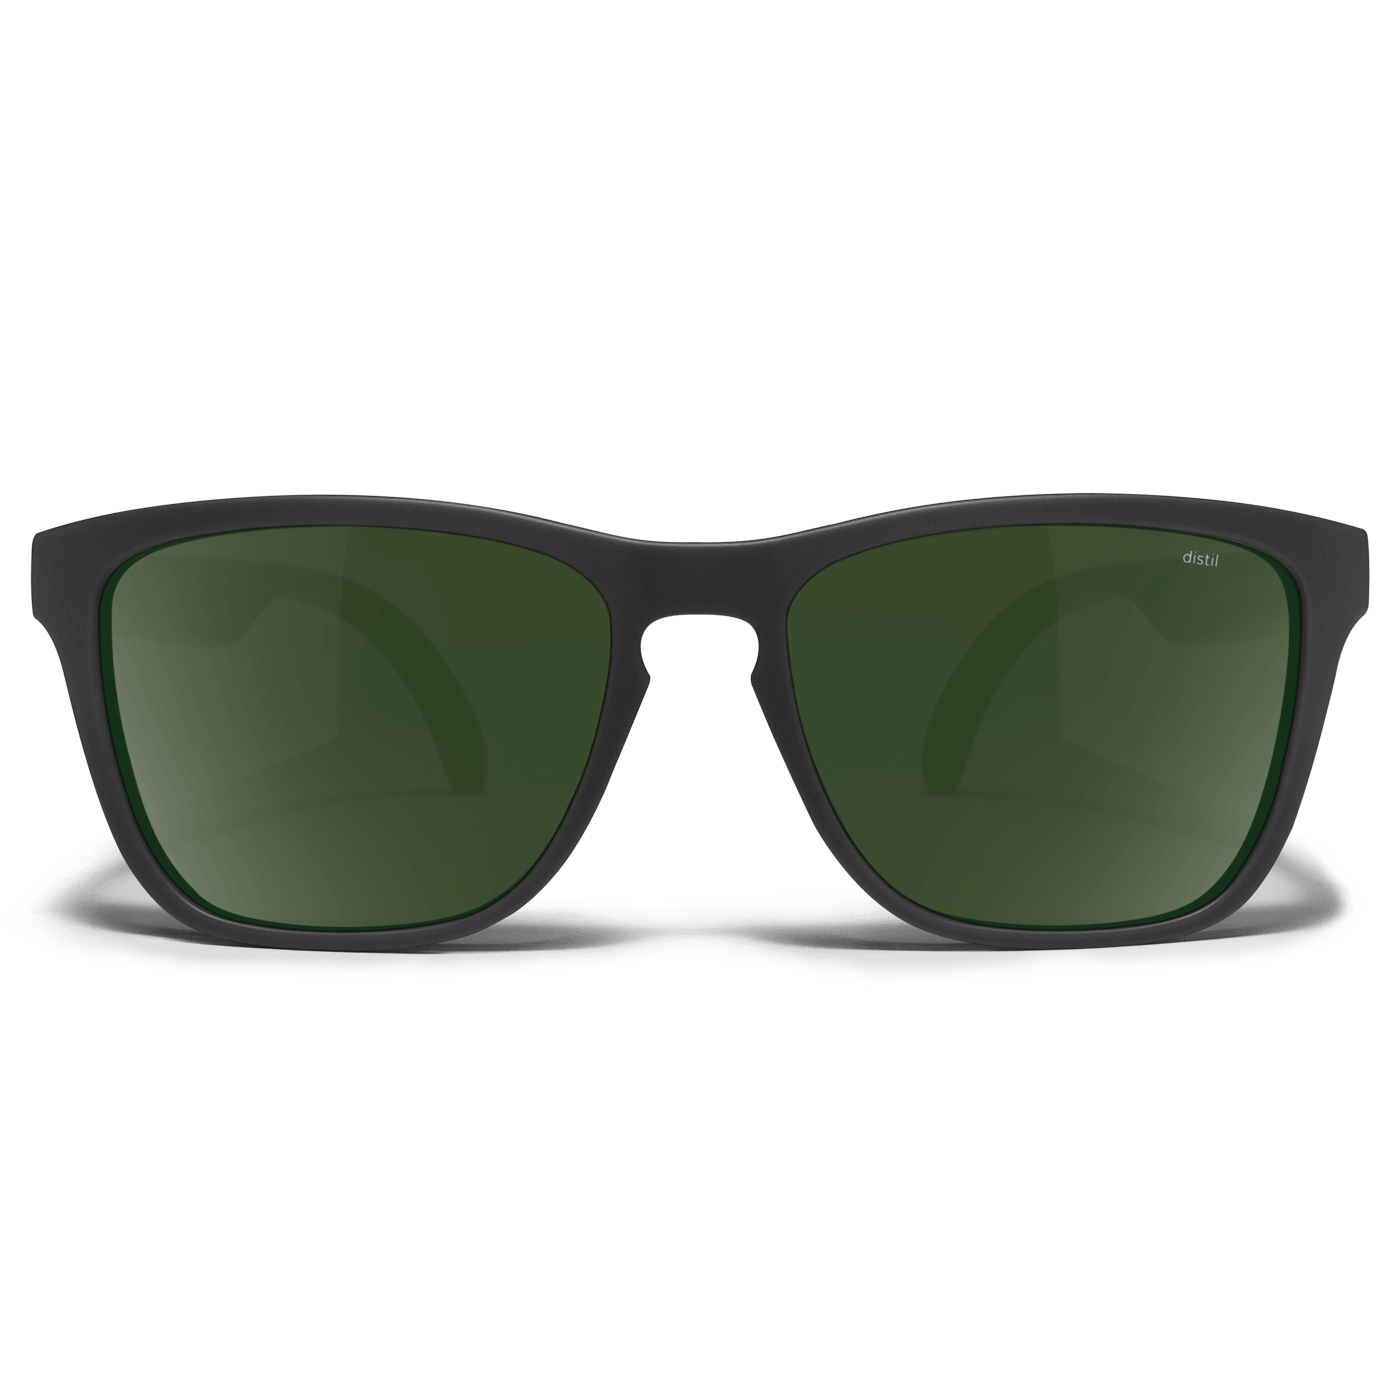 Distil Union Bottle Green Polarized Lens for Folly MagLock Sunglasses